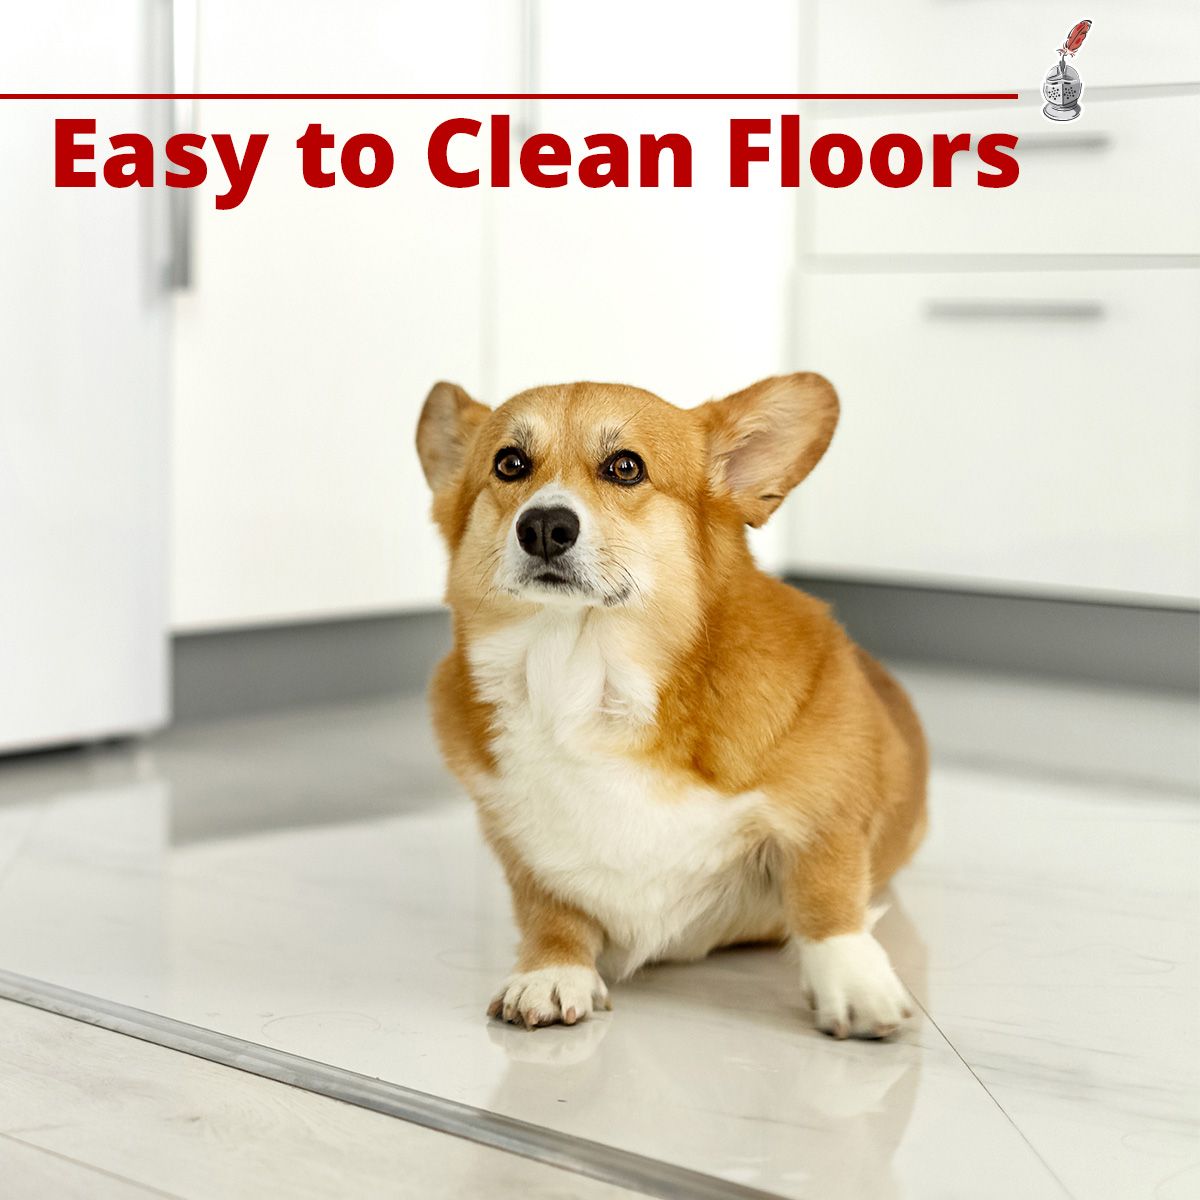 Easy to Clean Floors